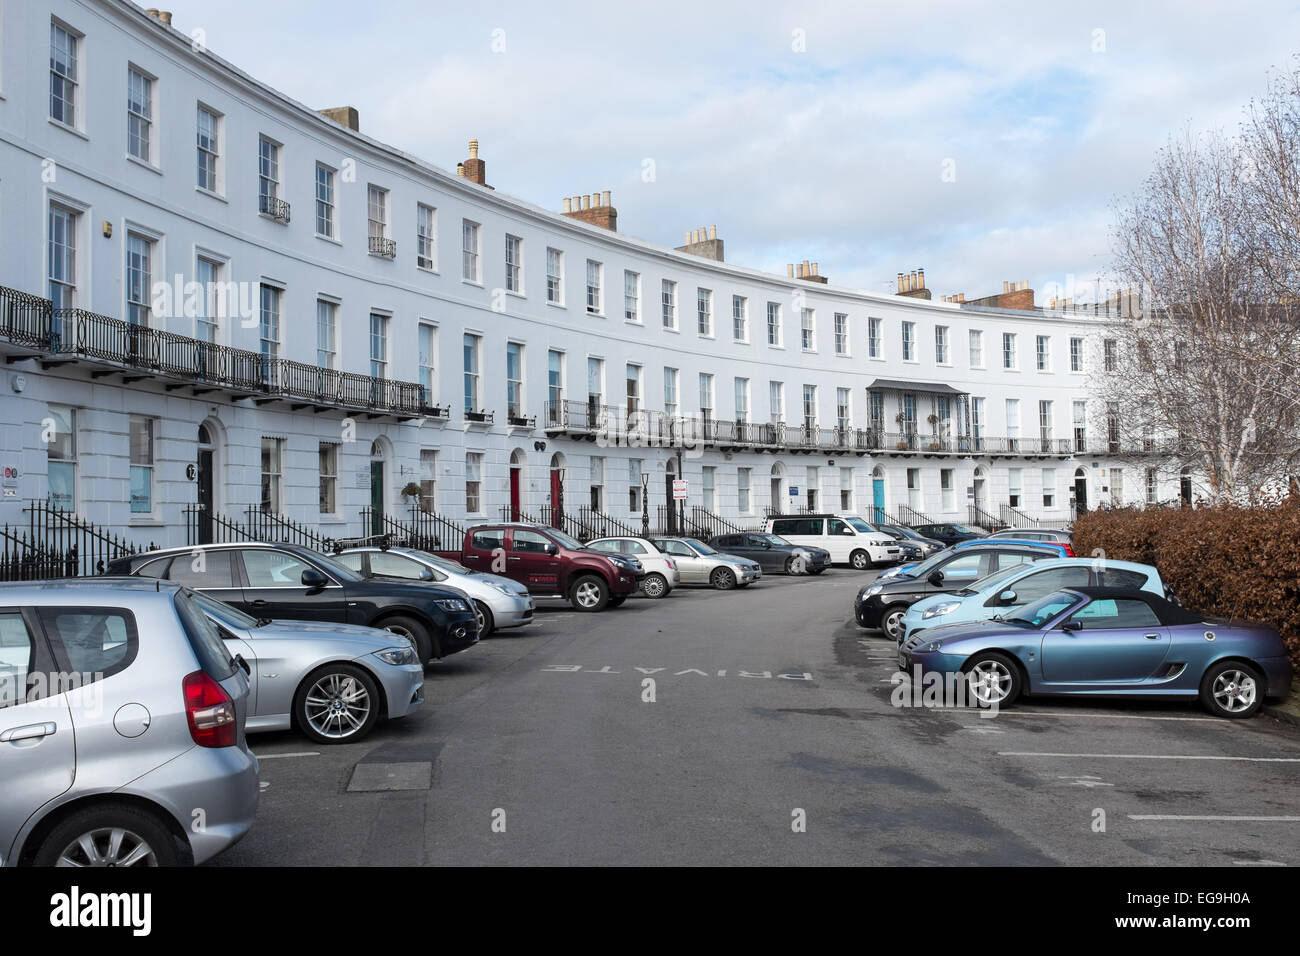 White Regency houses in Royal Crescent, Cheltenham Stock Photo